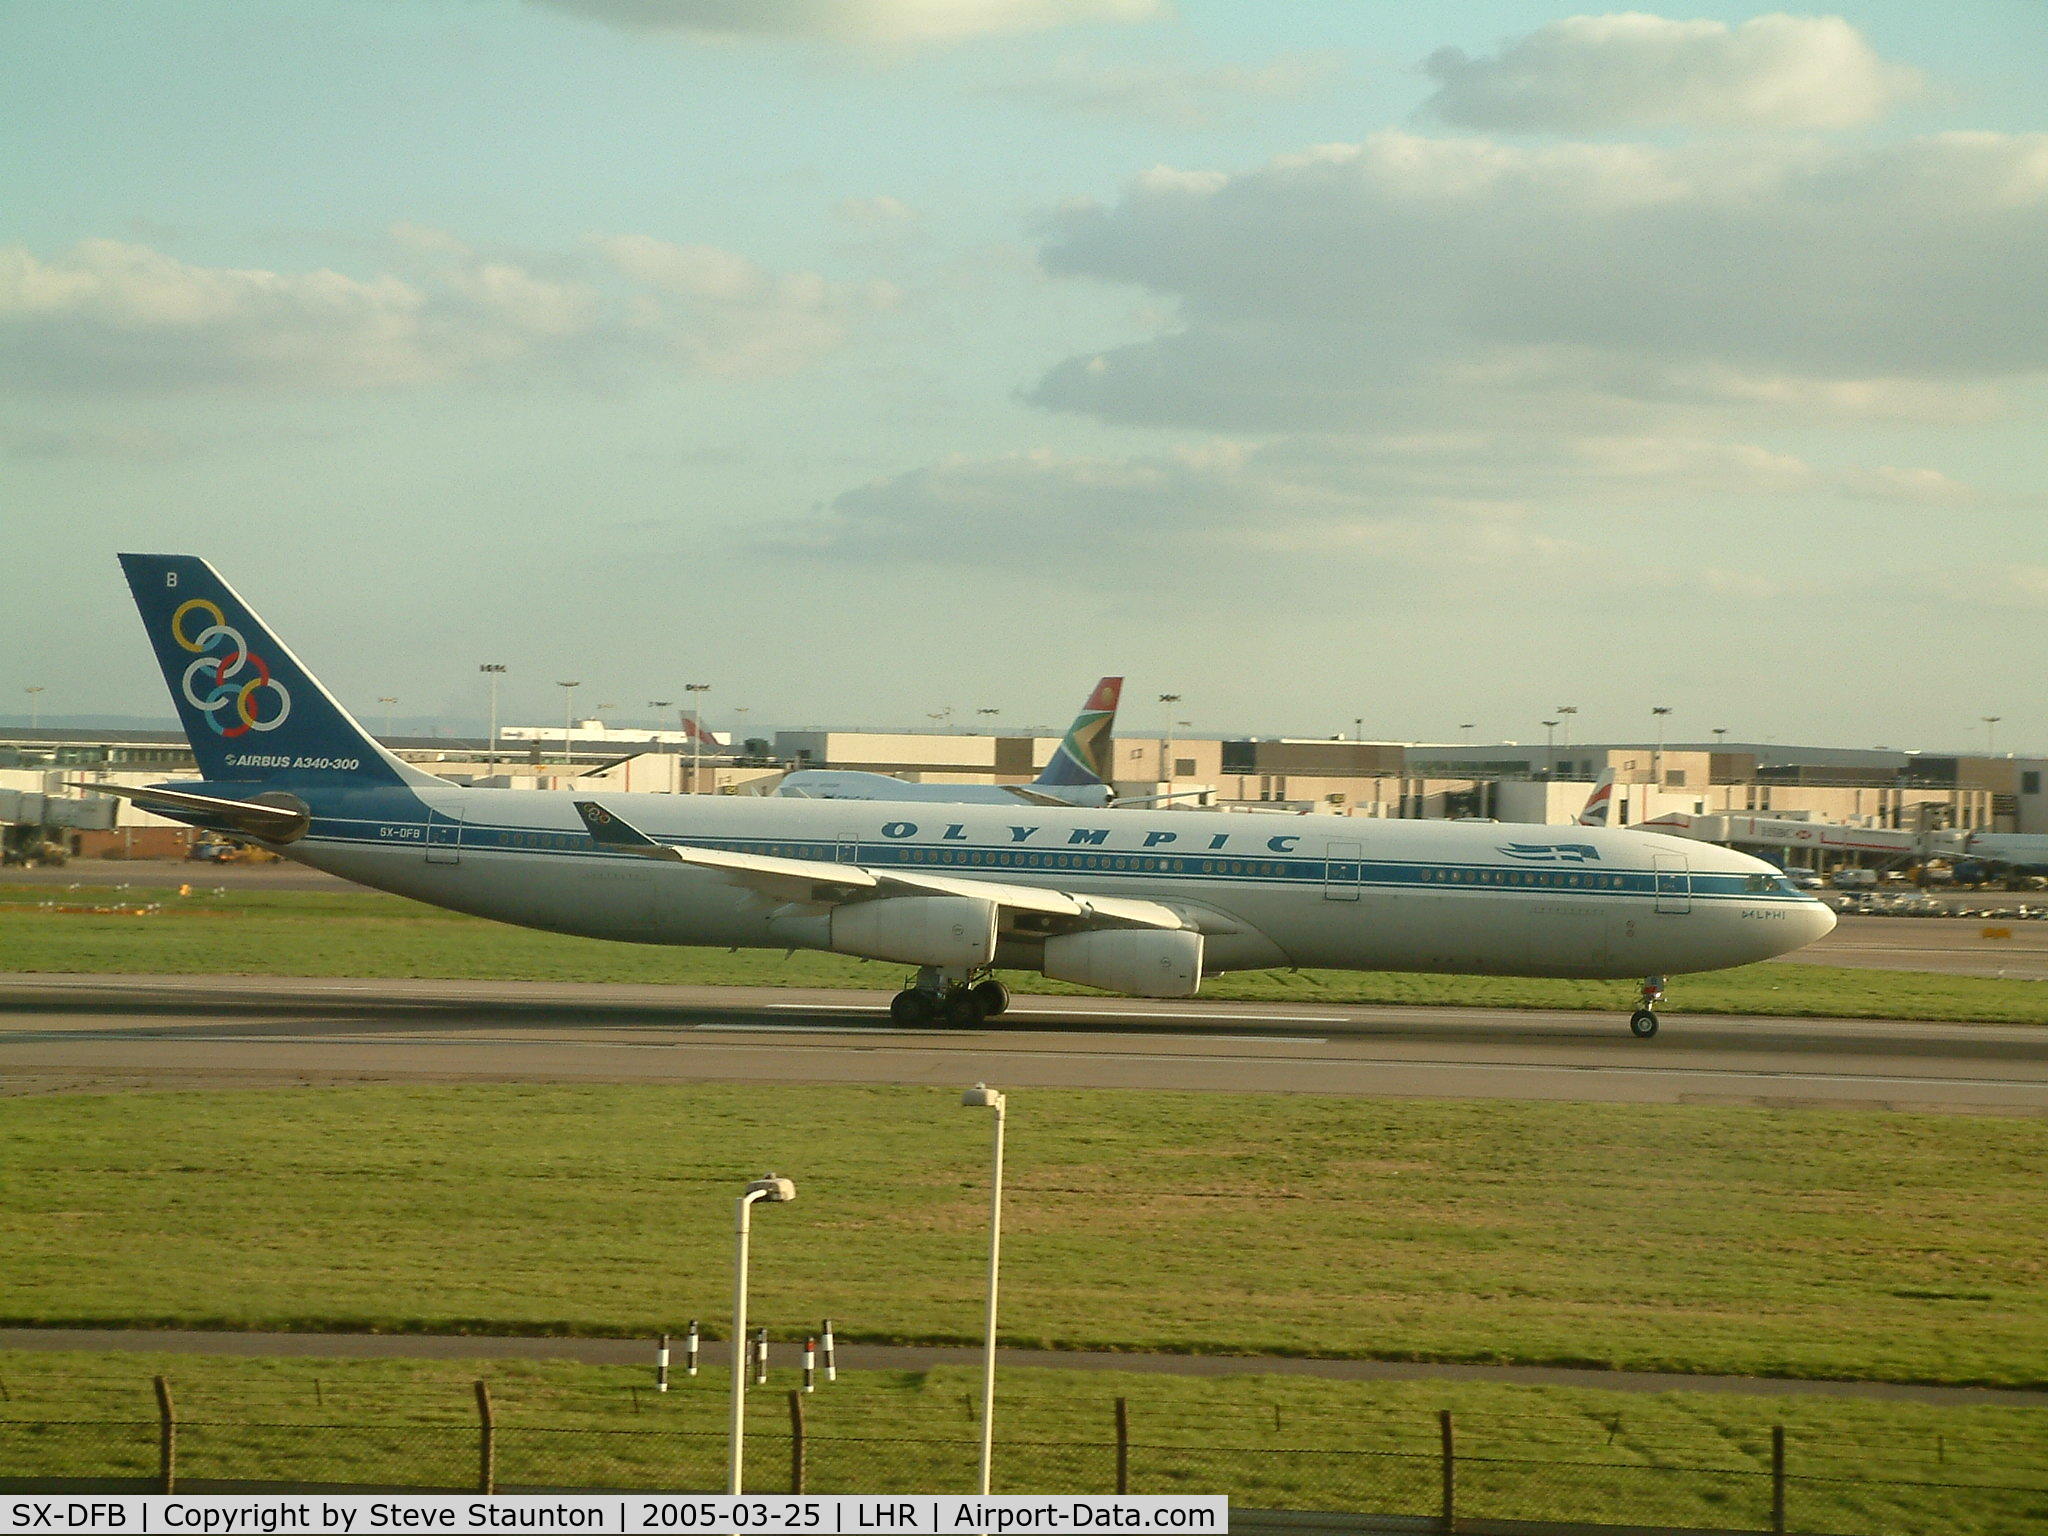 SX-DFB, 1999 Airbus A340-313X C/N 239, Taken at Heathrow Airport March 2005